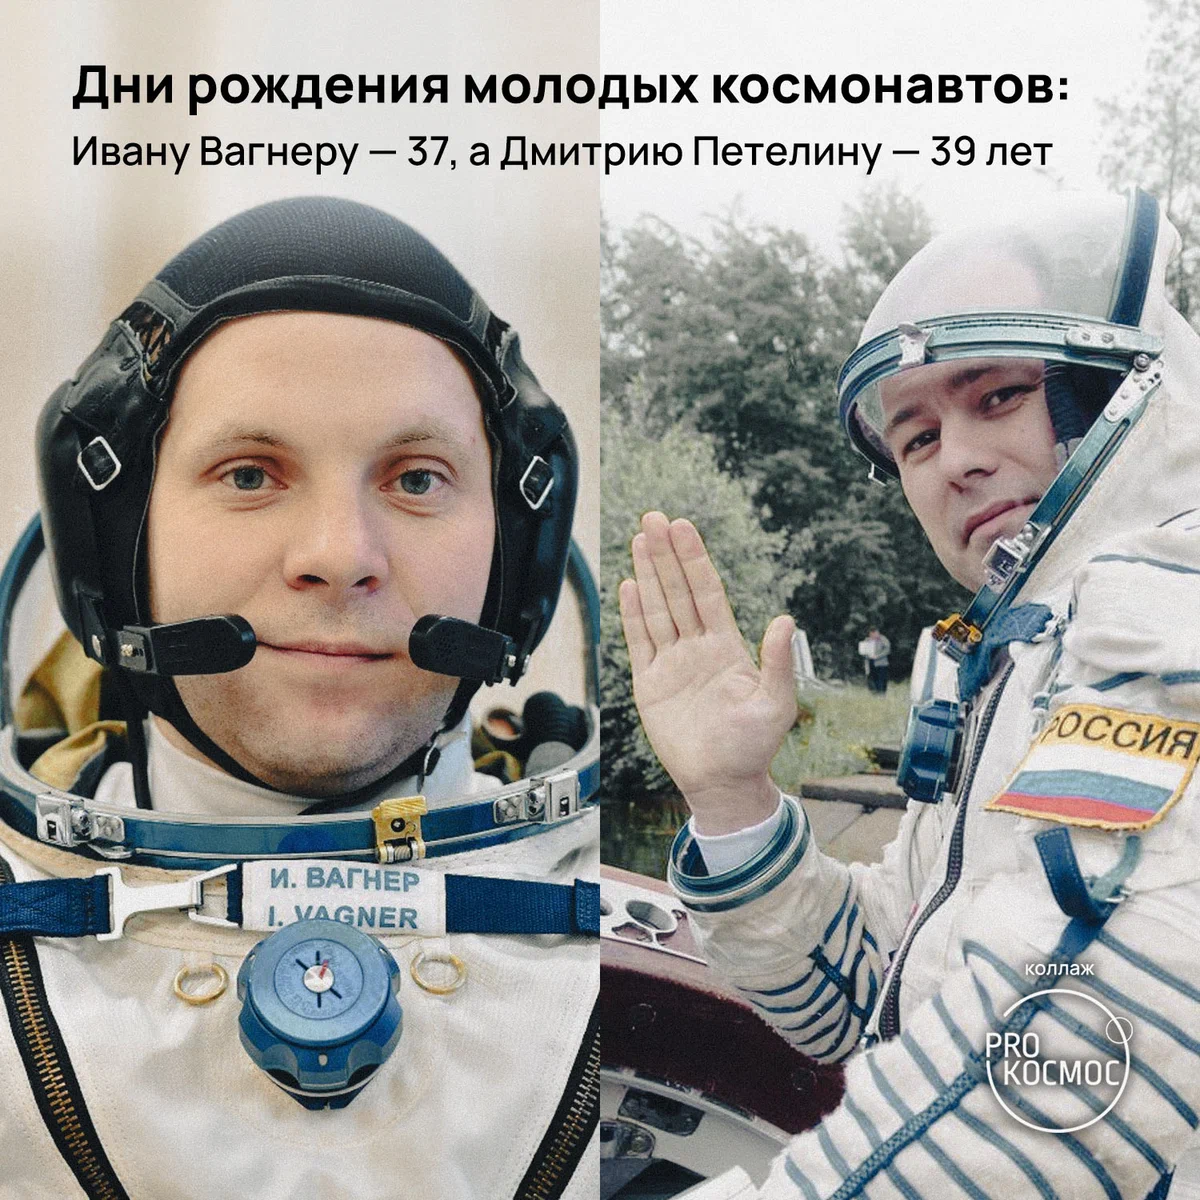 Дни рождения молодых космонавтов: Ивану Вагнеру — 37, а Дмитрию Петелину — 39 лет height=1200px width=1200px